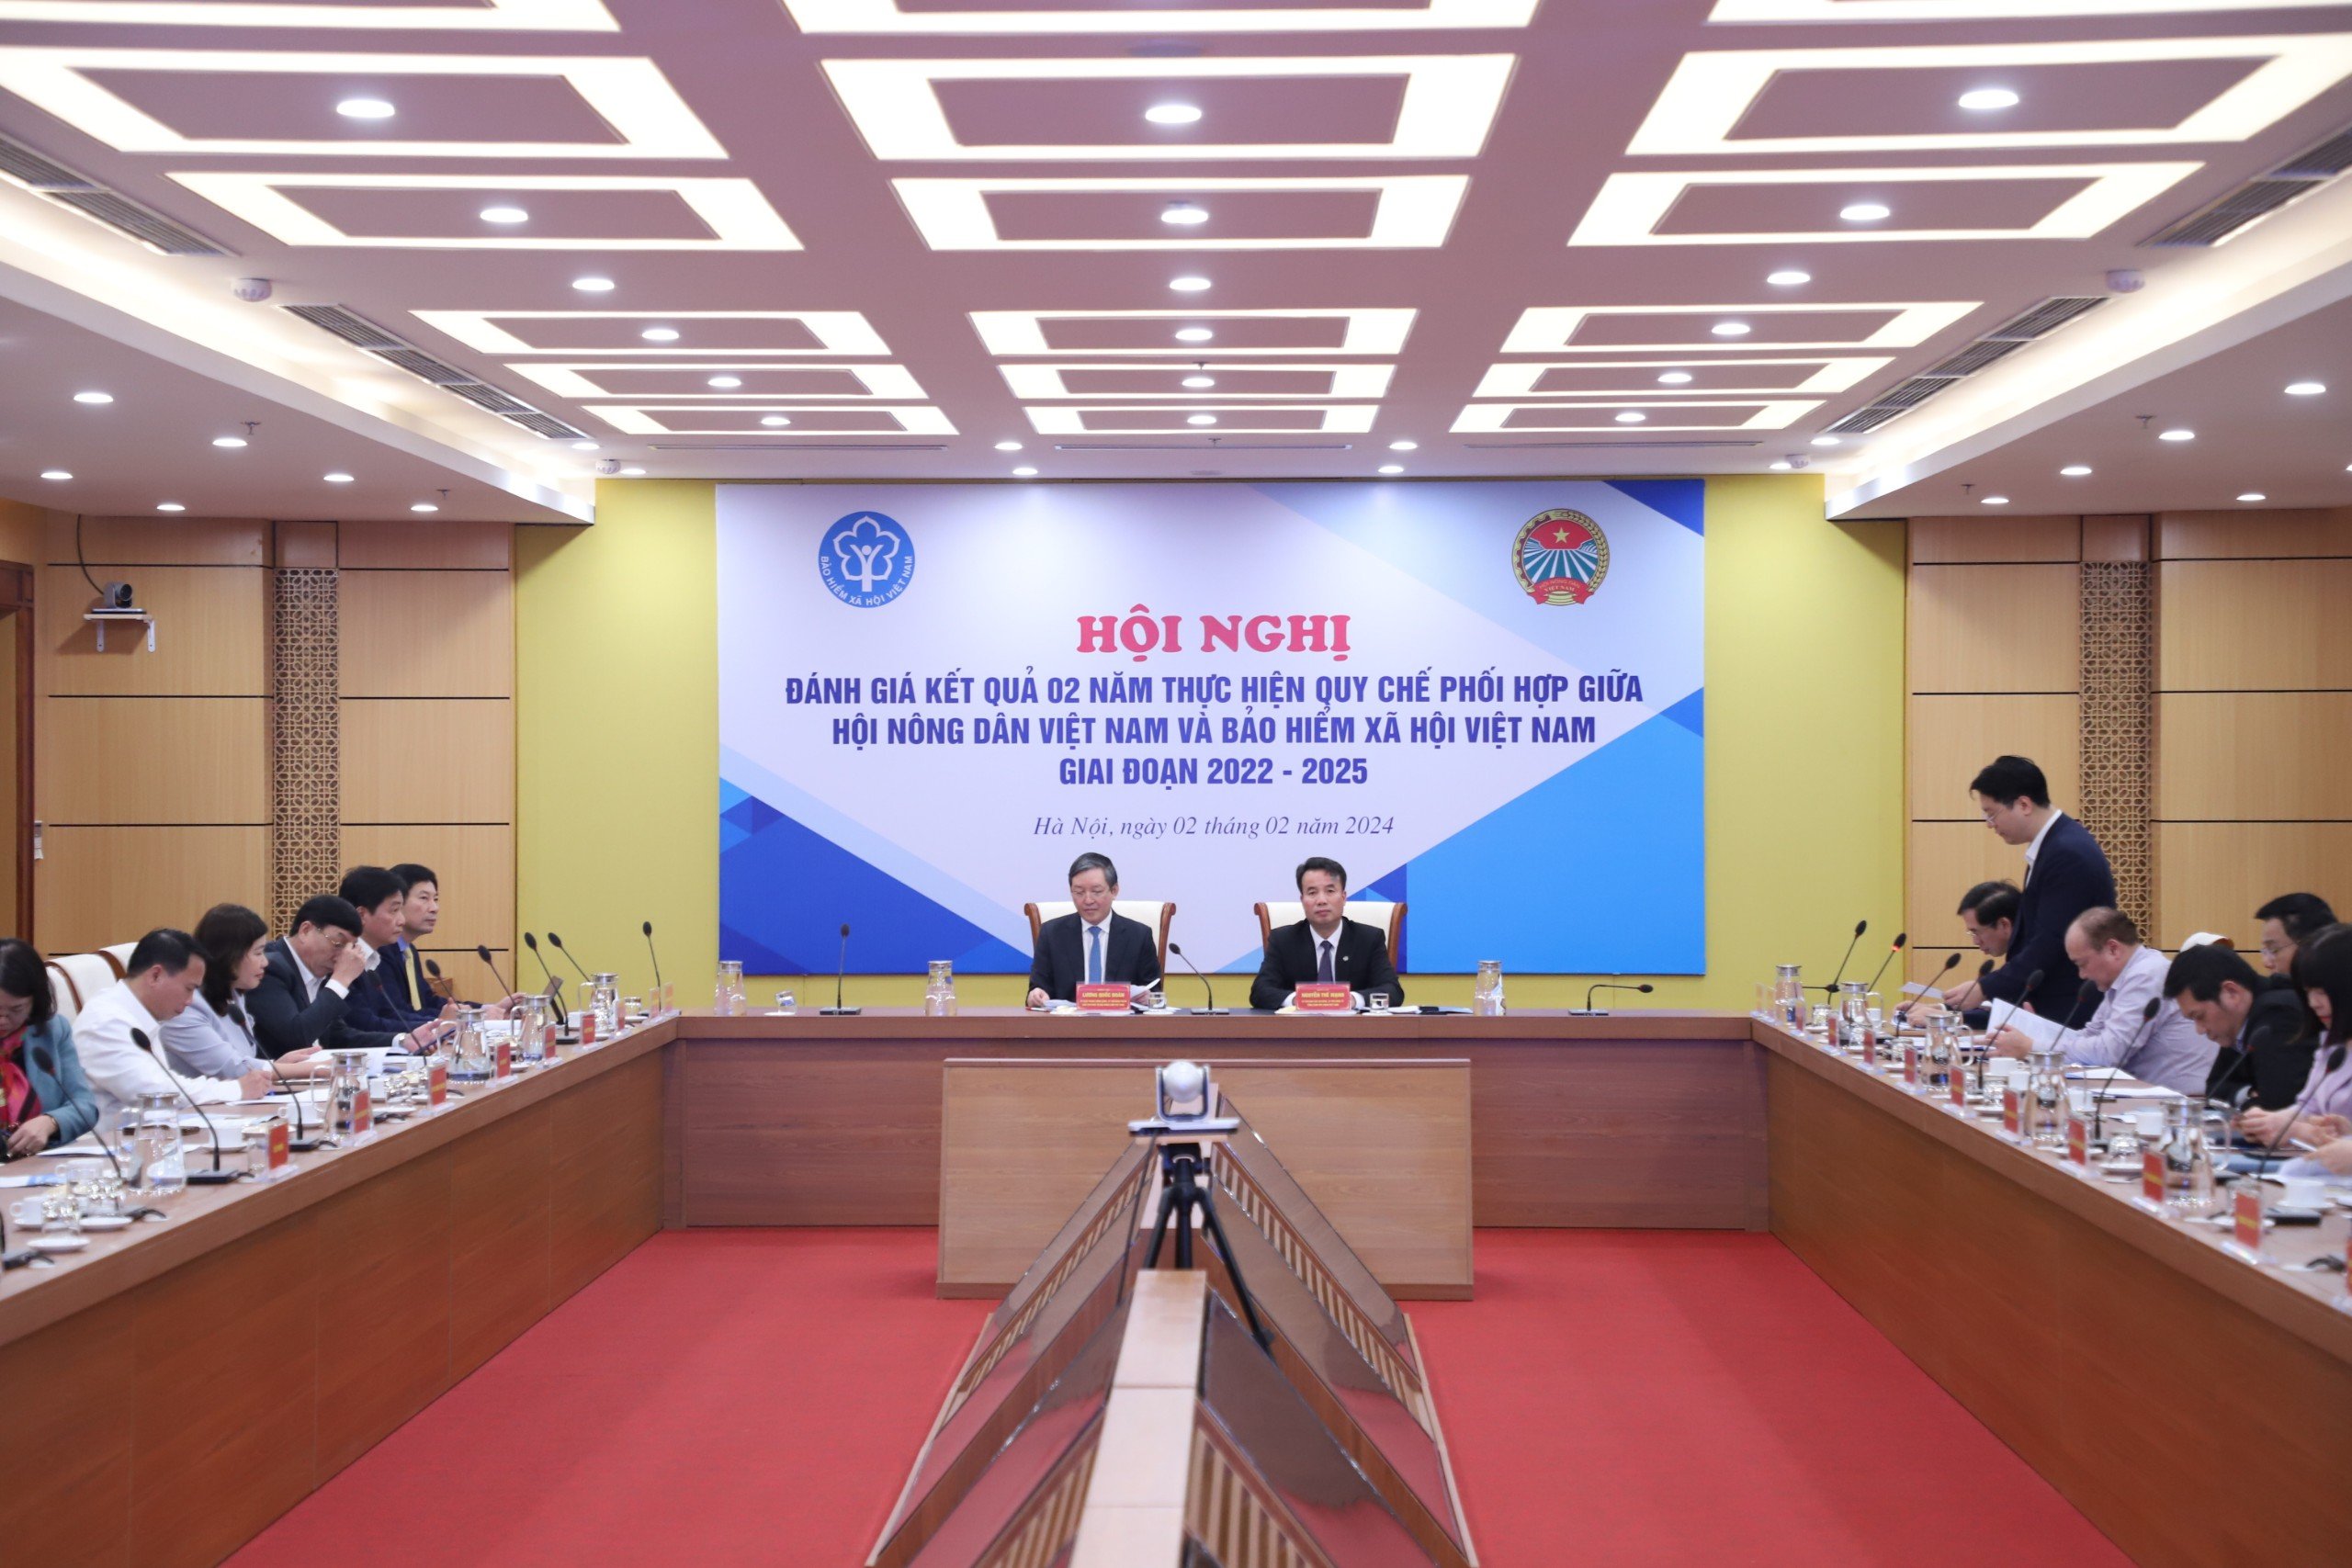 Hội Nông dân Việt Nam, BHXH Việt Nam tổ chức đánh giá kết quả 2 năm thực hiện quy chế phối hợp- Ảnh 1.